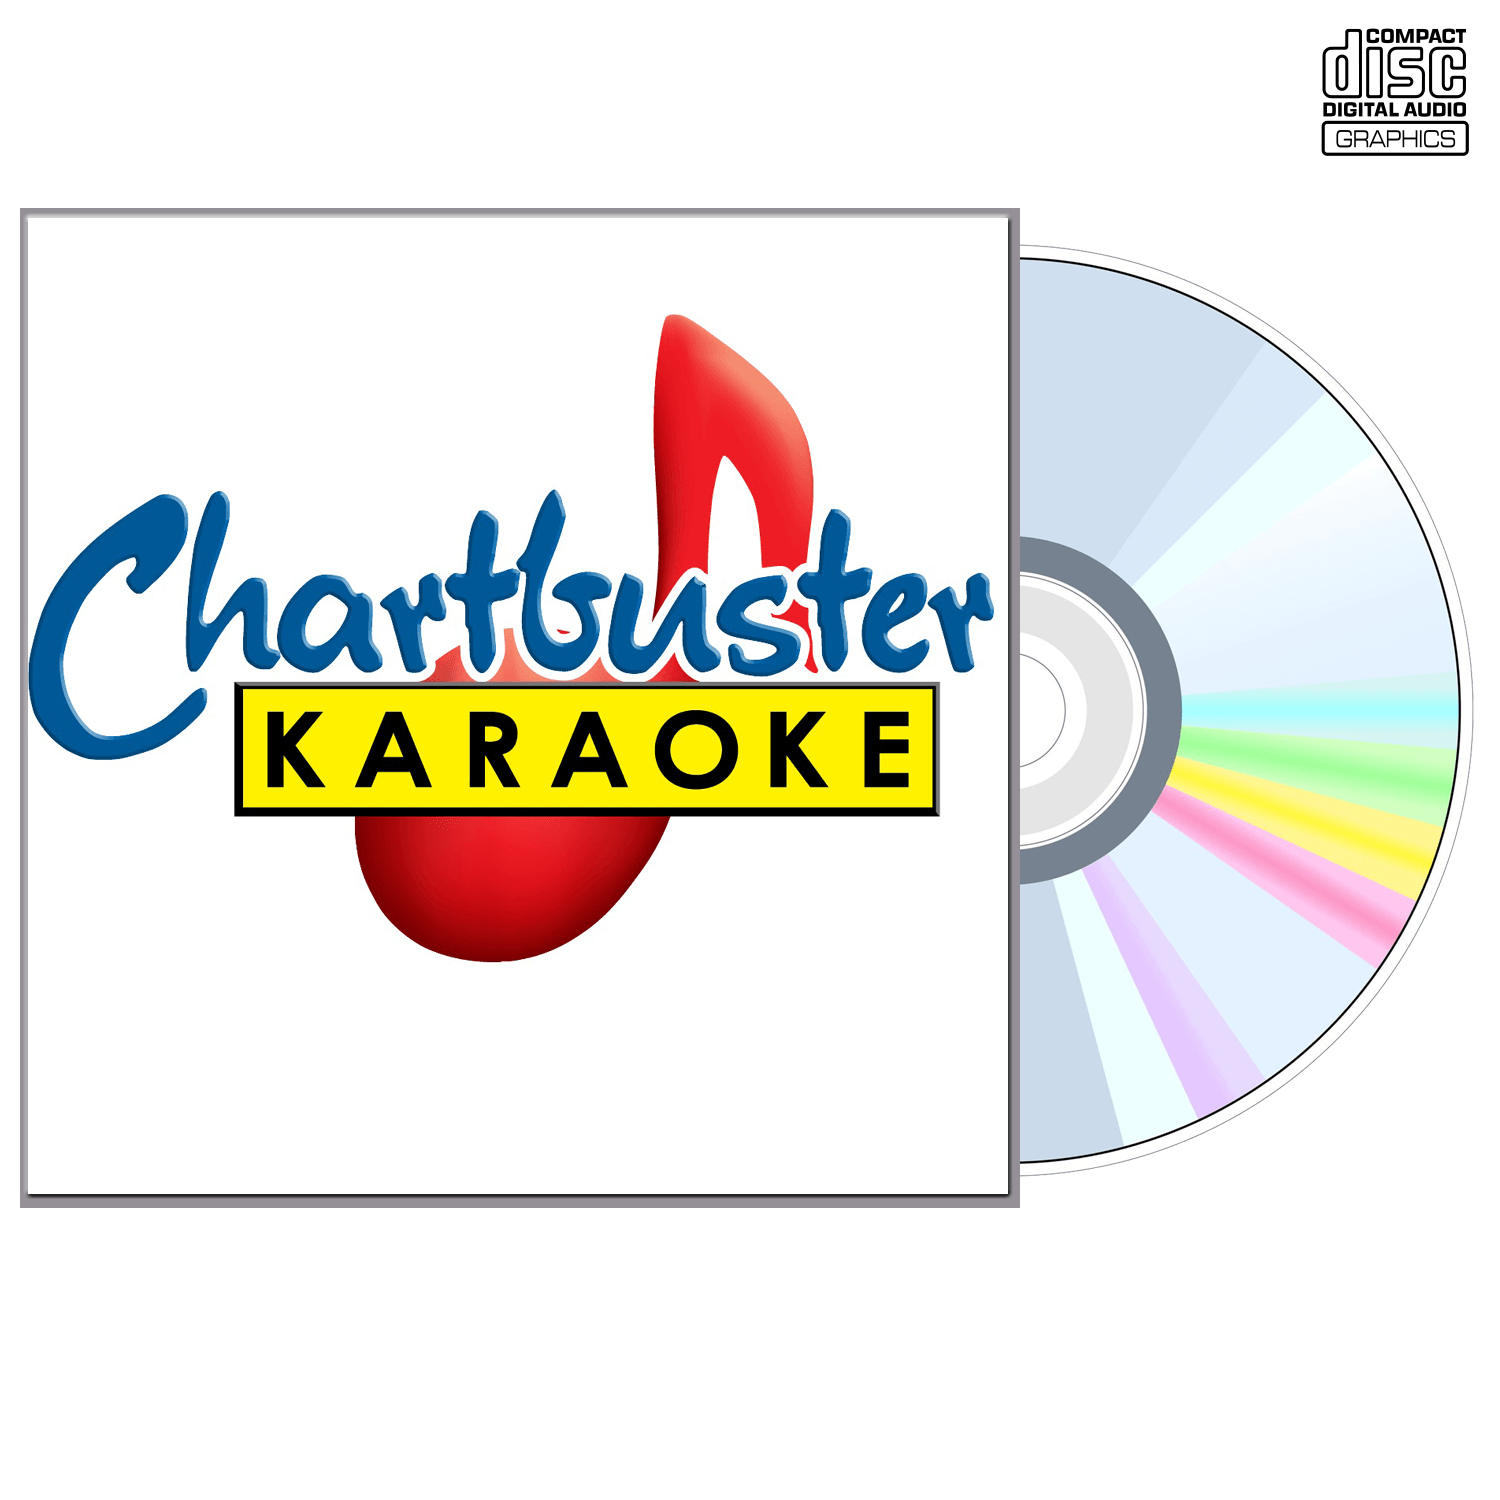 Abba - CD+G - Chartbuster Karaoke - Karaoke Home Entertainment